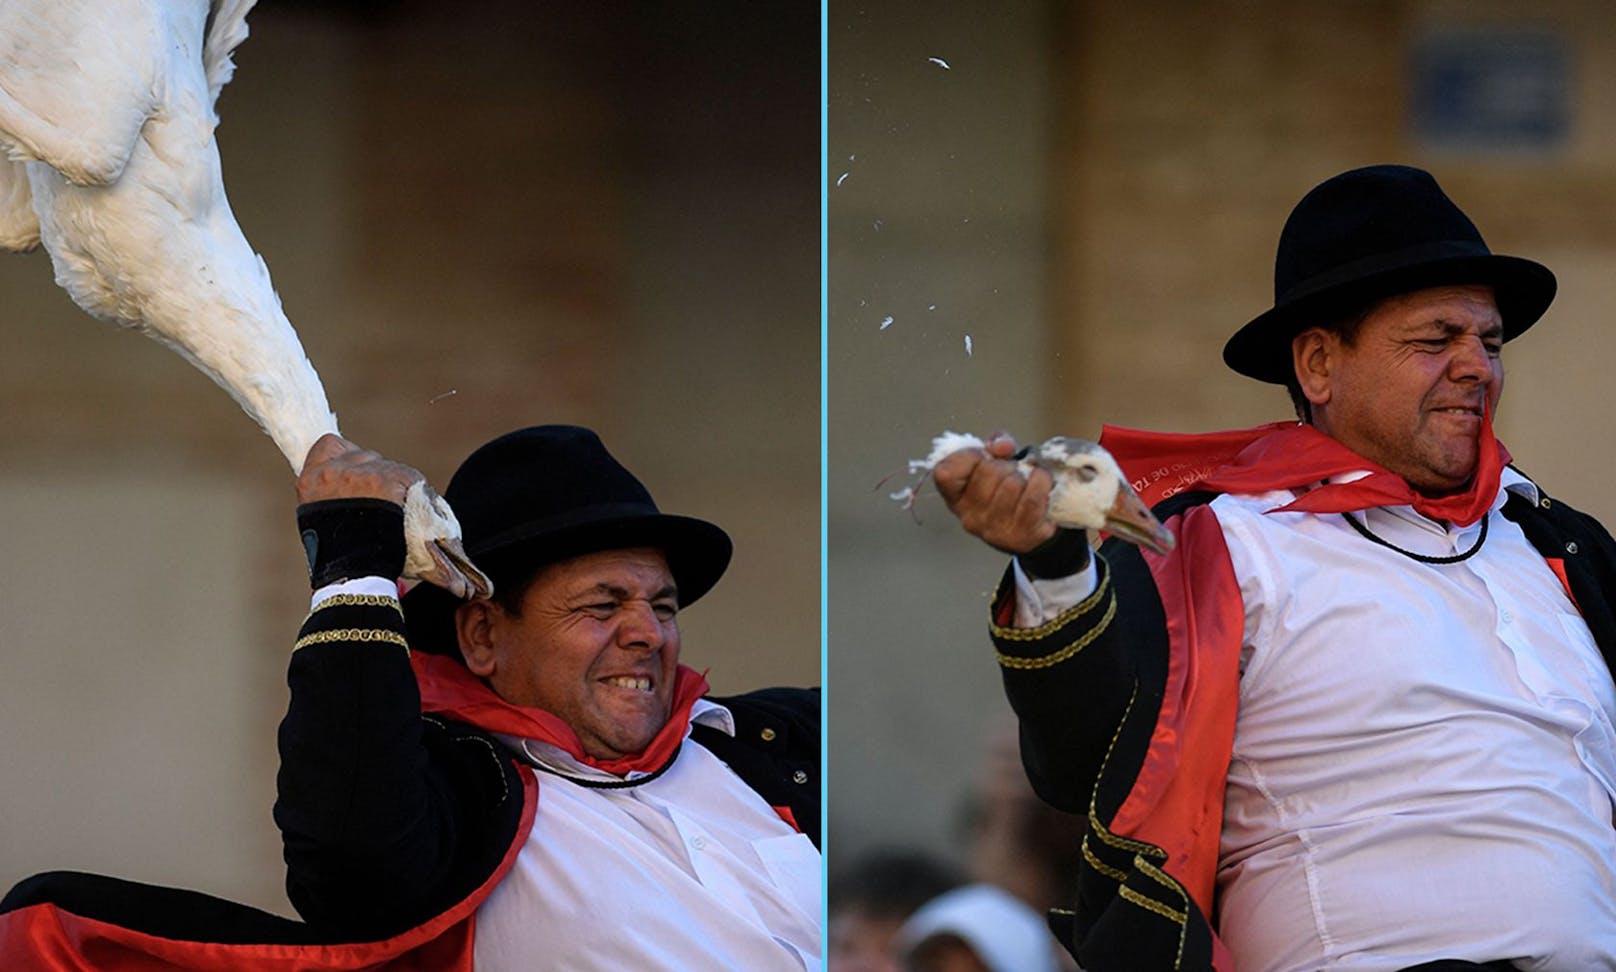 Traditionell versucht ein Reiter einer aufgehängten Gans während des Jakobusfestes in Spanien den Kopf abzureißen.